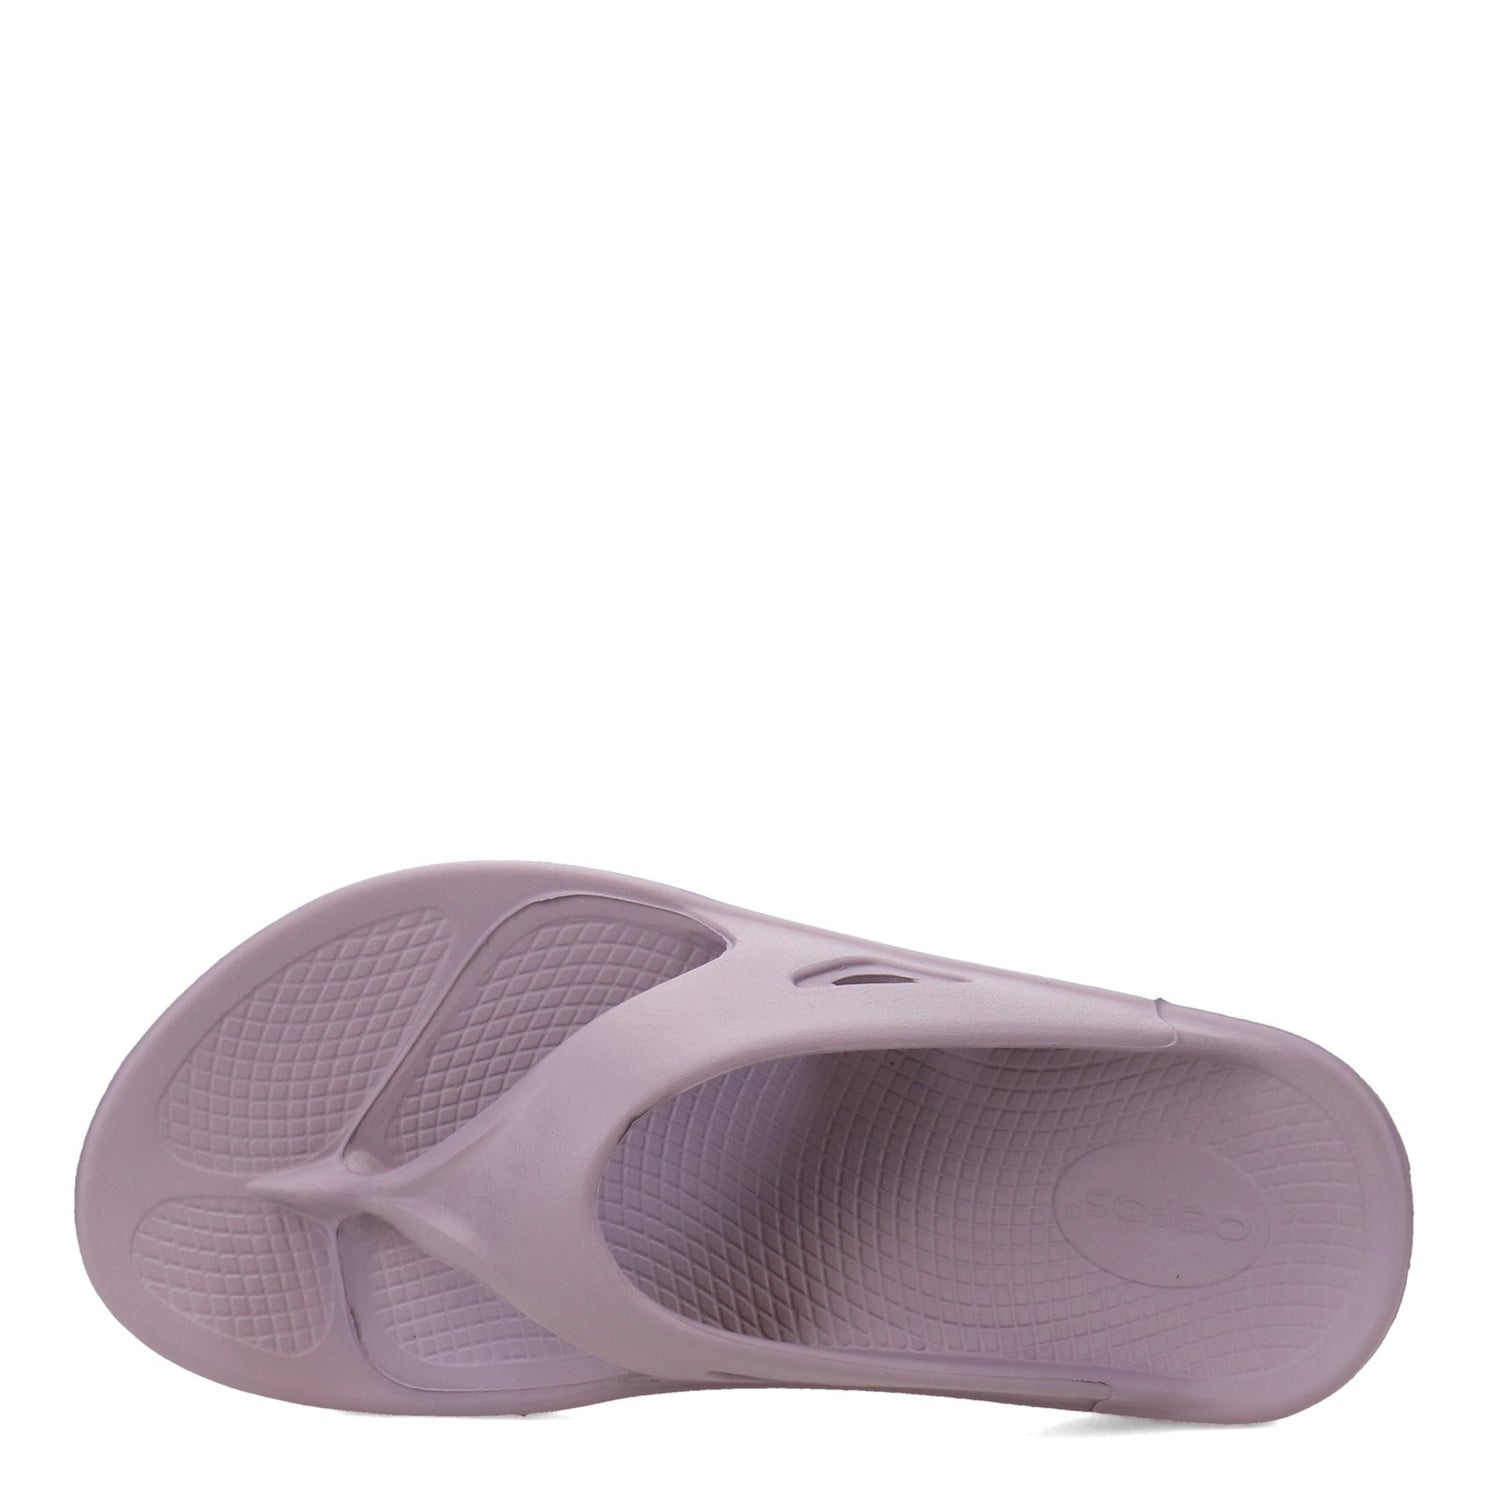 Peltz Shoes  Unisex Oofos OOriginal Flip Flop Thong Sandal MAUVE 1000-MAUVE